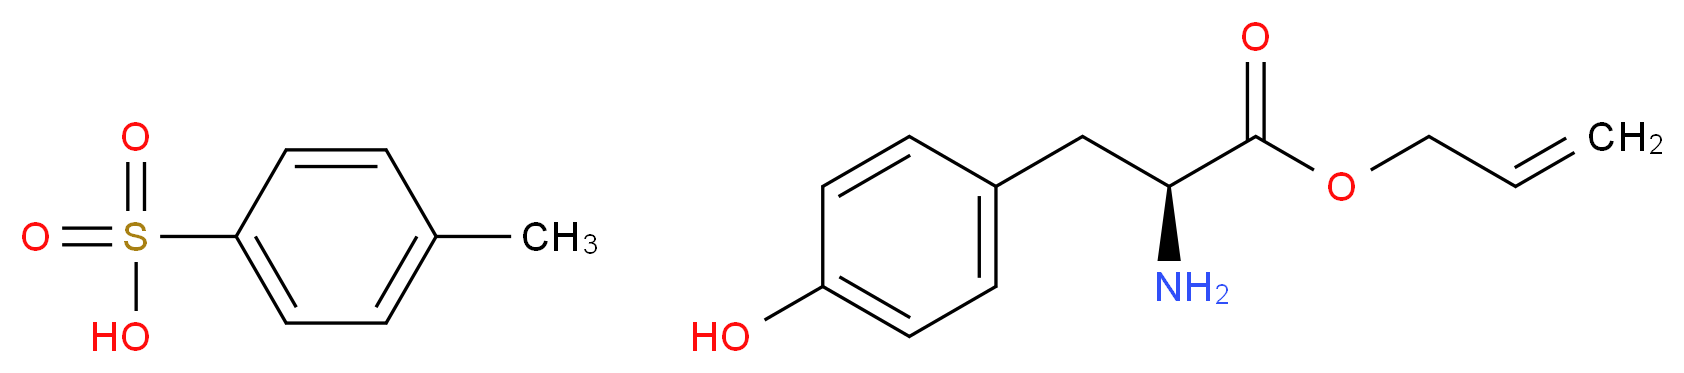 L-TYROSINE ALLYL ESTER p-TOLUENESULFONATE SALT_Molecular_structure_CAS_125441-05-6)